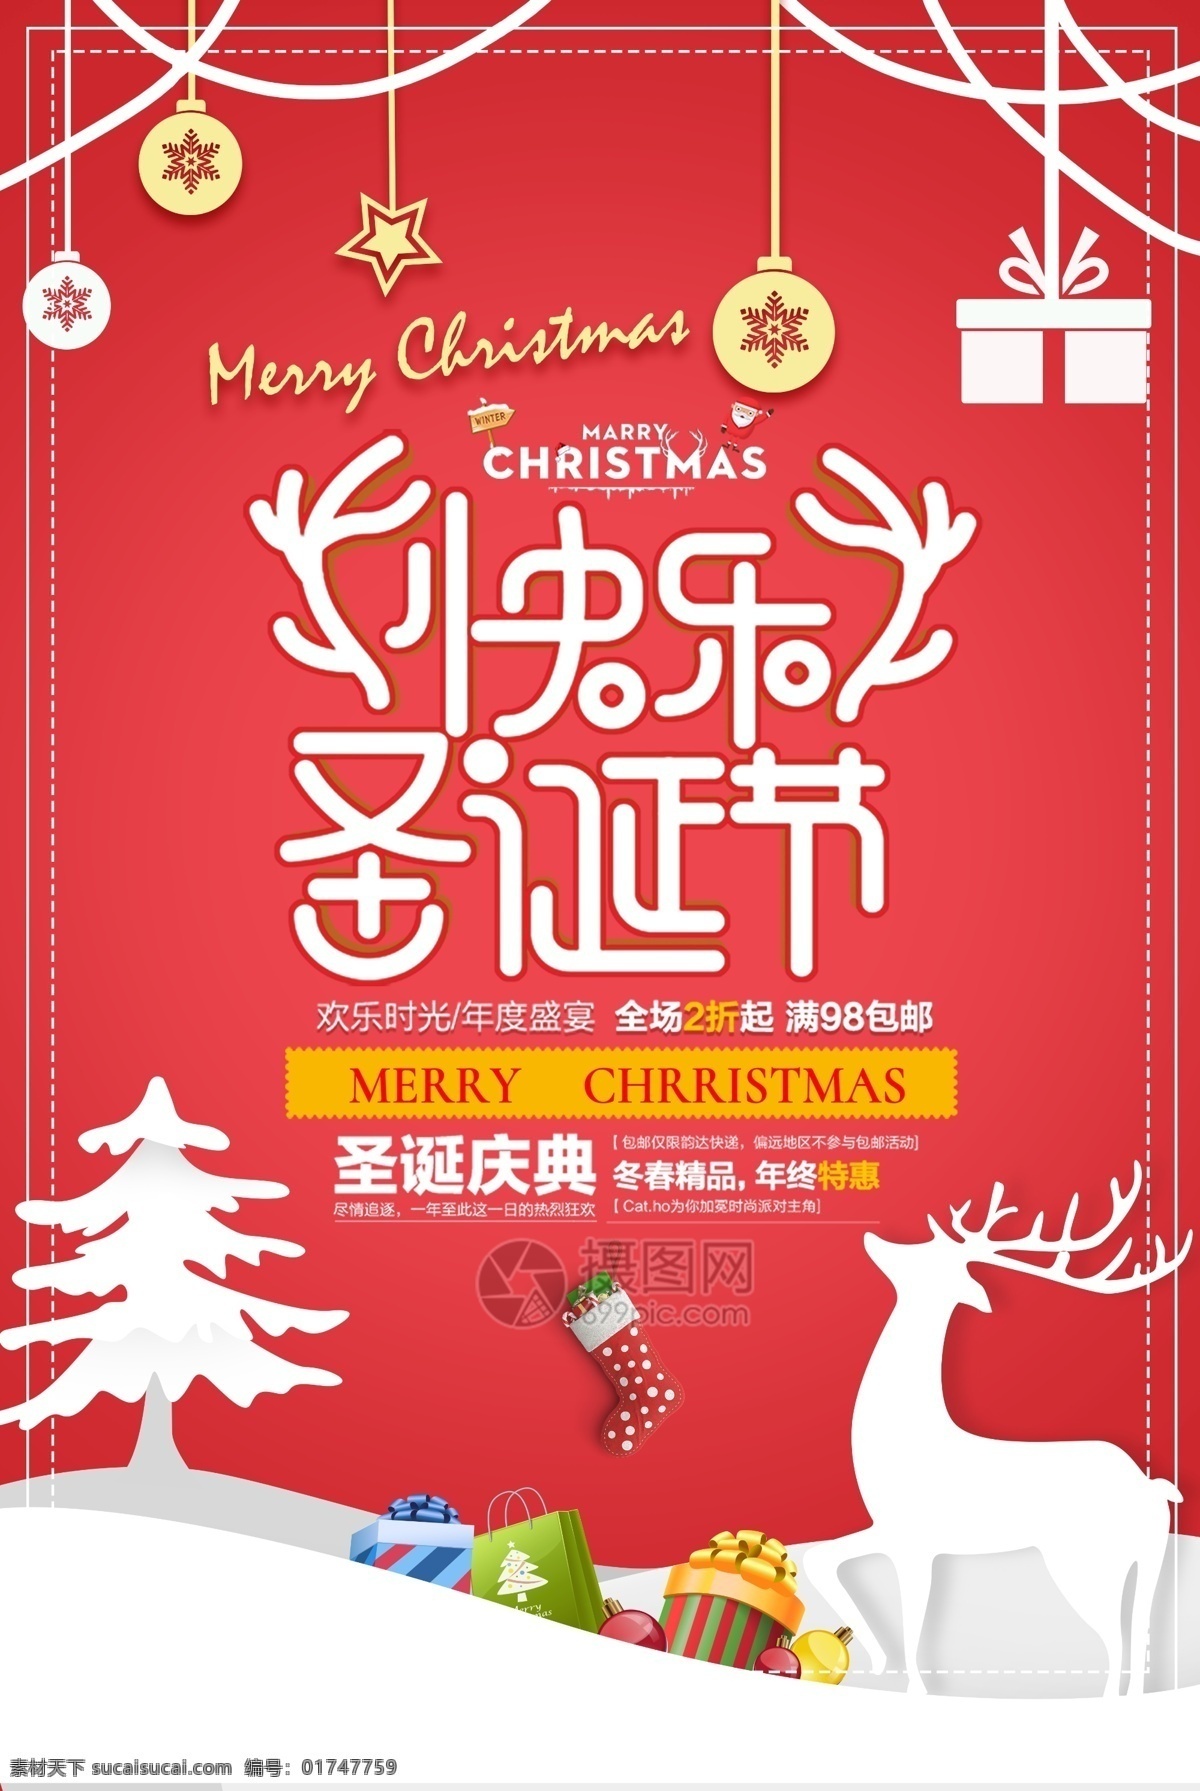 2018 温馨 节日 风 圣诞节 促销 海报 打折 设计模板 快乐圣诞节 圣诞节快乐